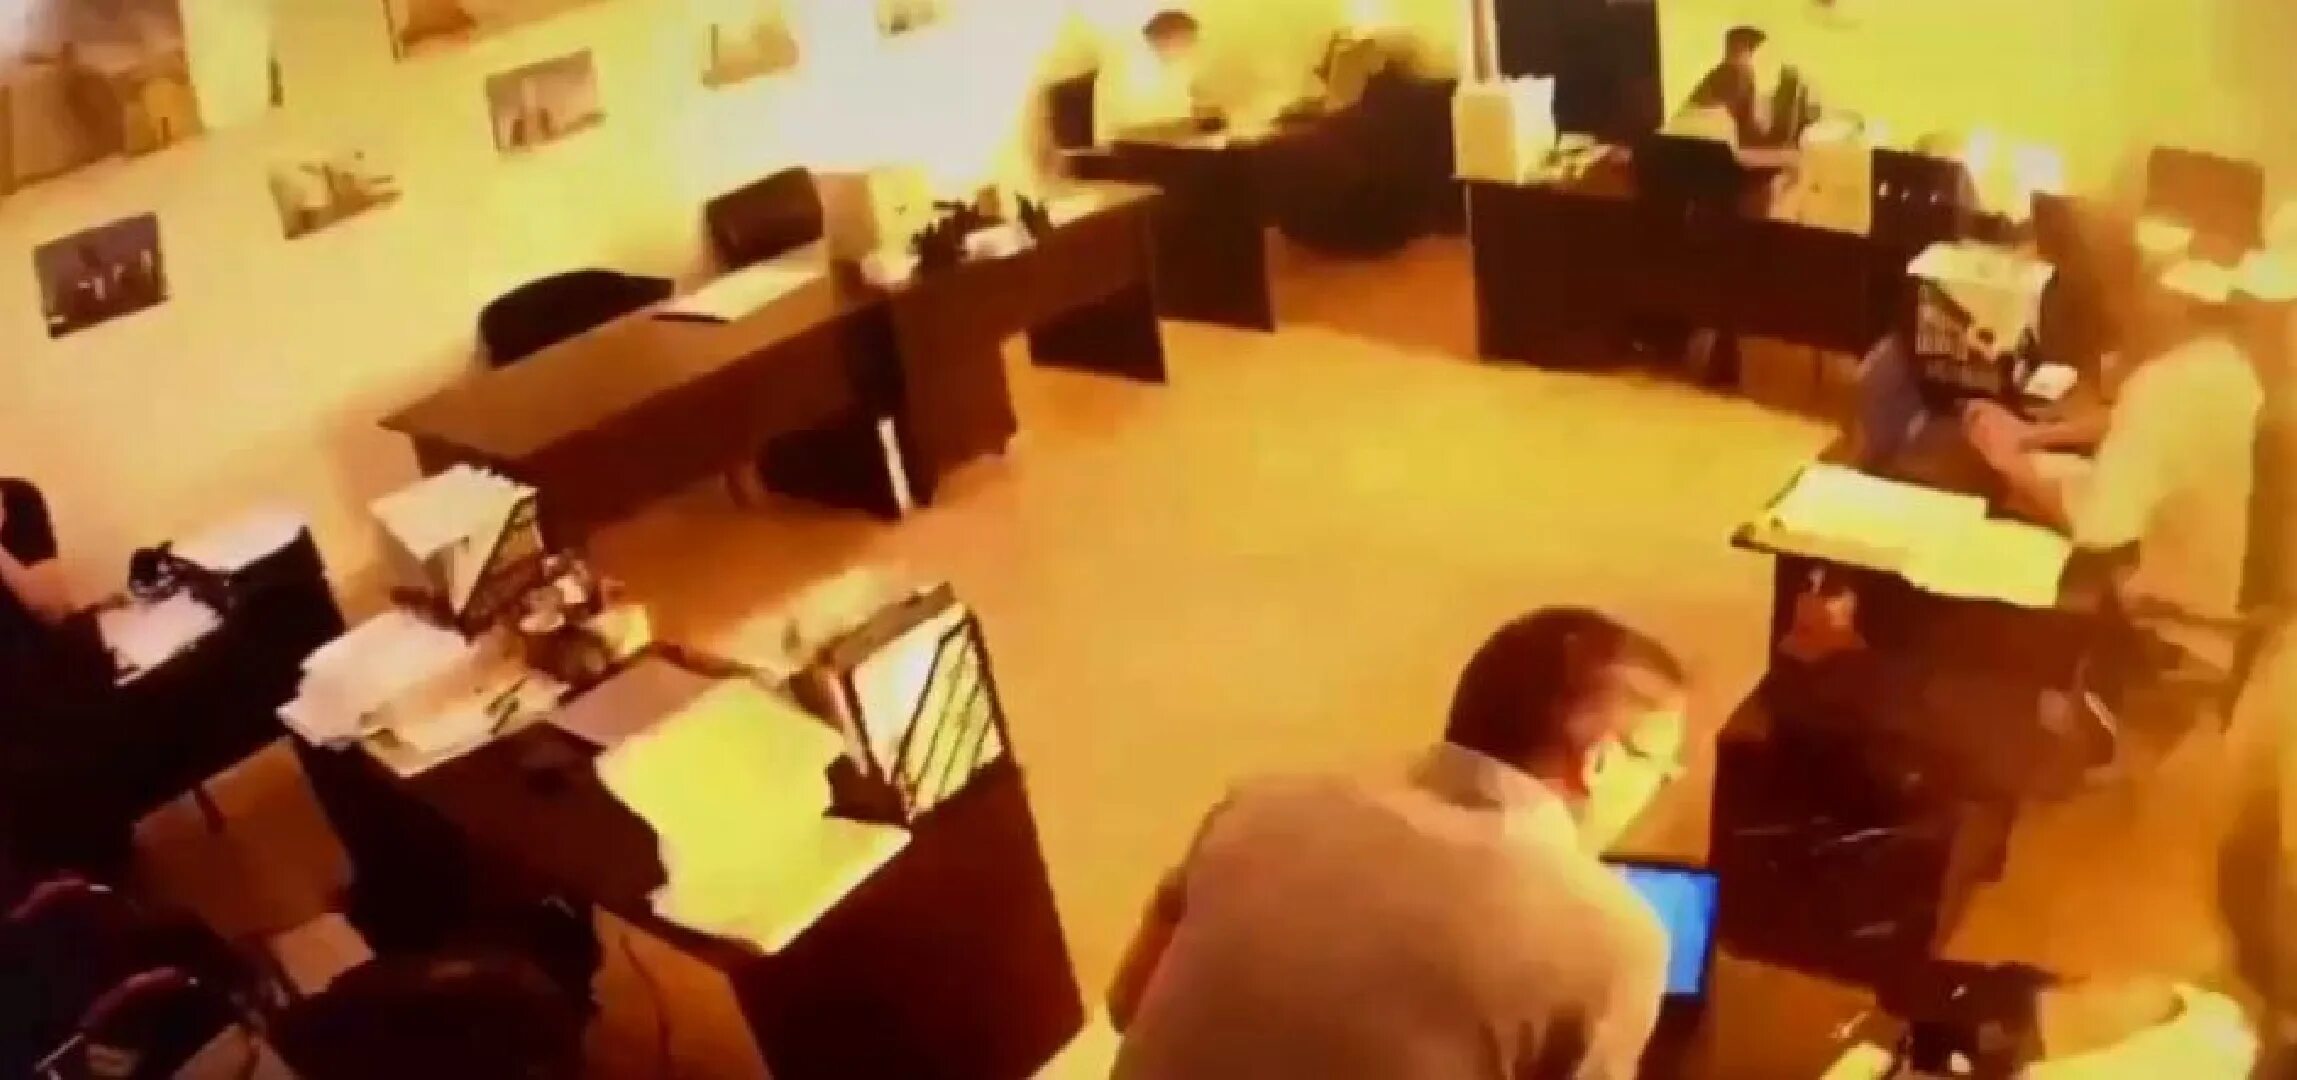 Камеры видеонаблюдения в офисе. Видео с камер видеонаблюдения. Кадры из офиса. Фото беспилотников.